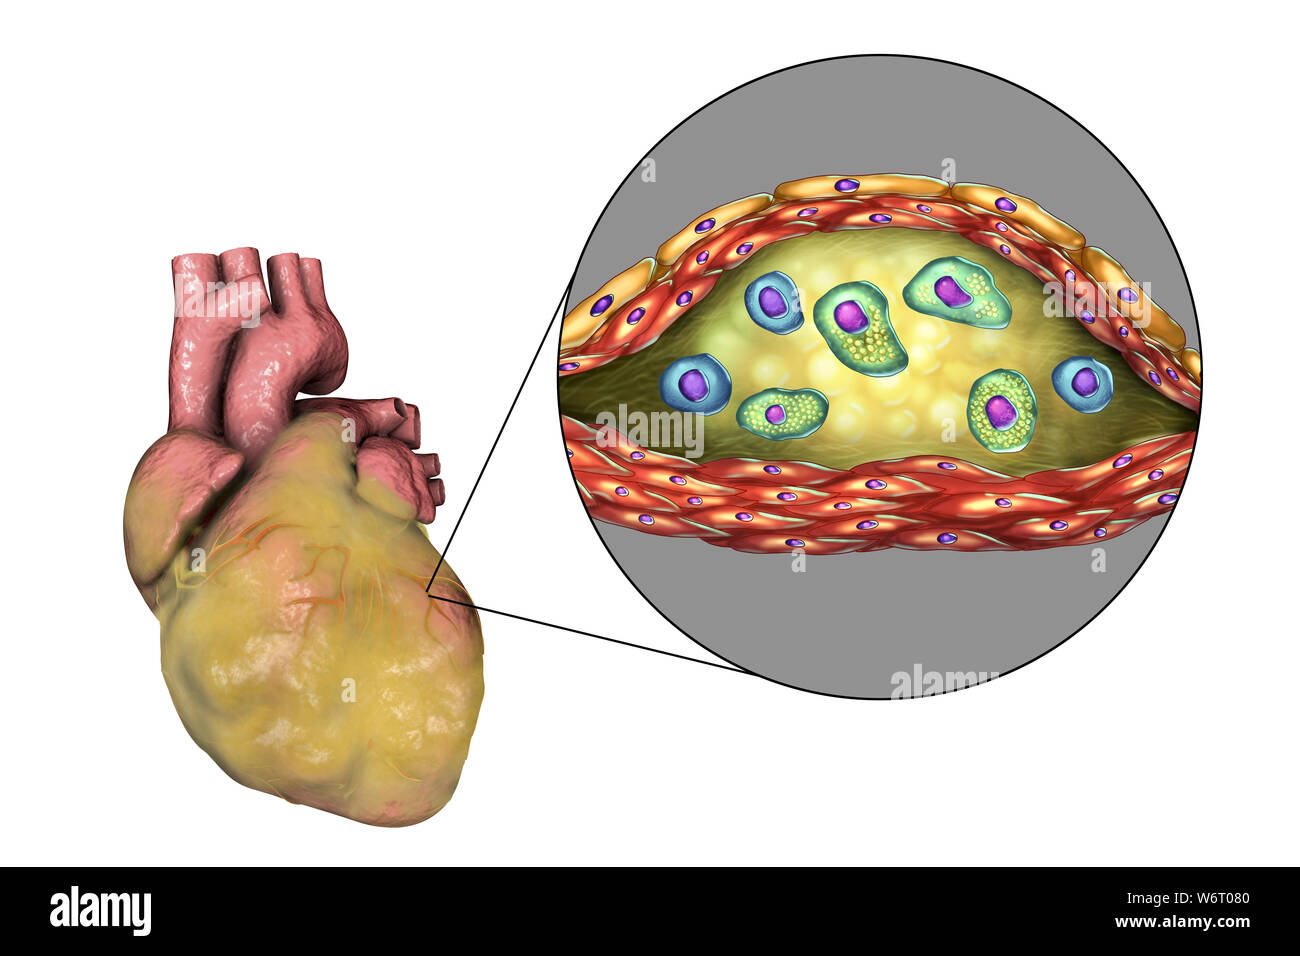 Herzkrankheit, computer Abbildung. Kranke Fettsäuren Herz und Querschnitt einer atherosklerotischen Plaque und die histologische Struktur, wie z.b. nekrotischen Zentrum, Schaum-Zellen und T-Lymphozyten. Die Wände sind von glatten Muskelzellen und Endothel der Blutgefäße. Stockfoto